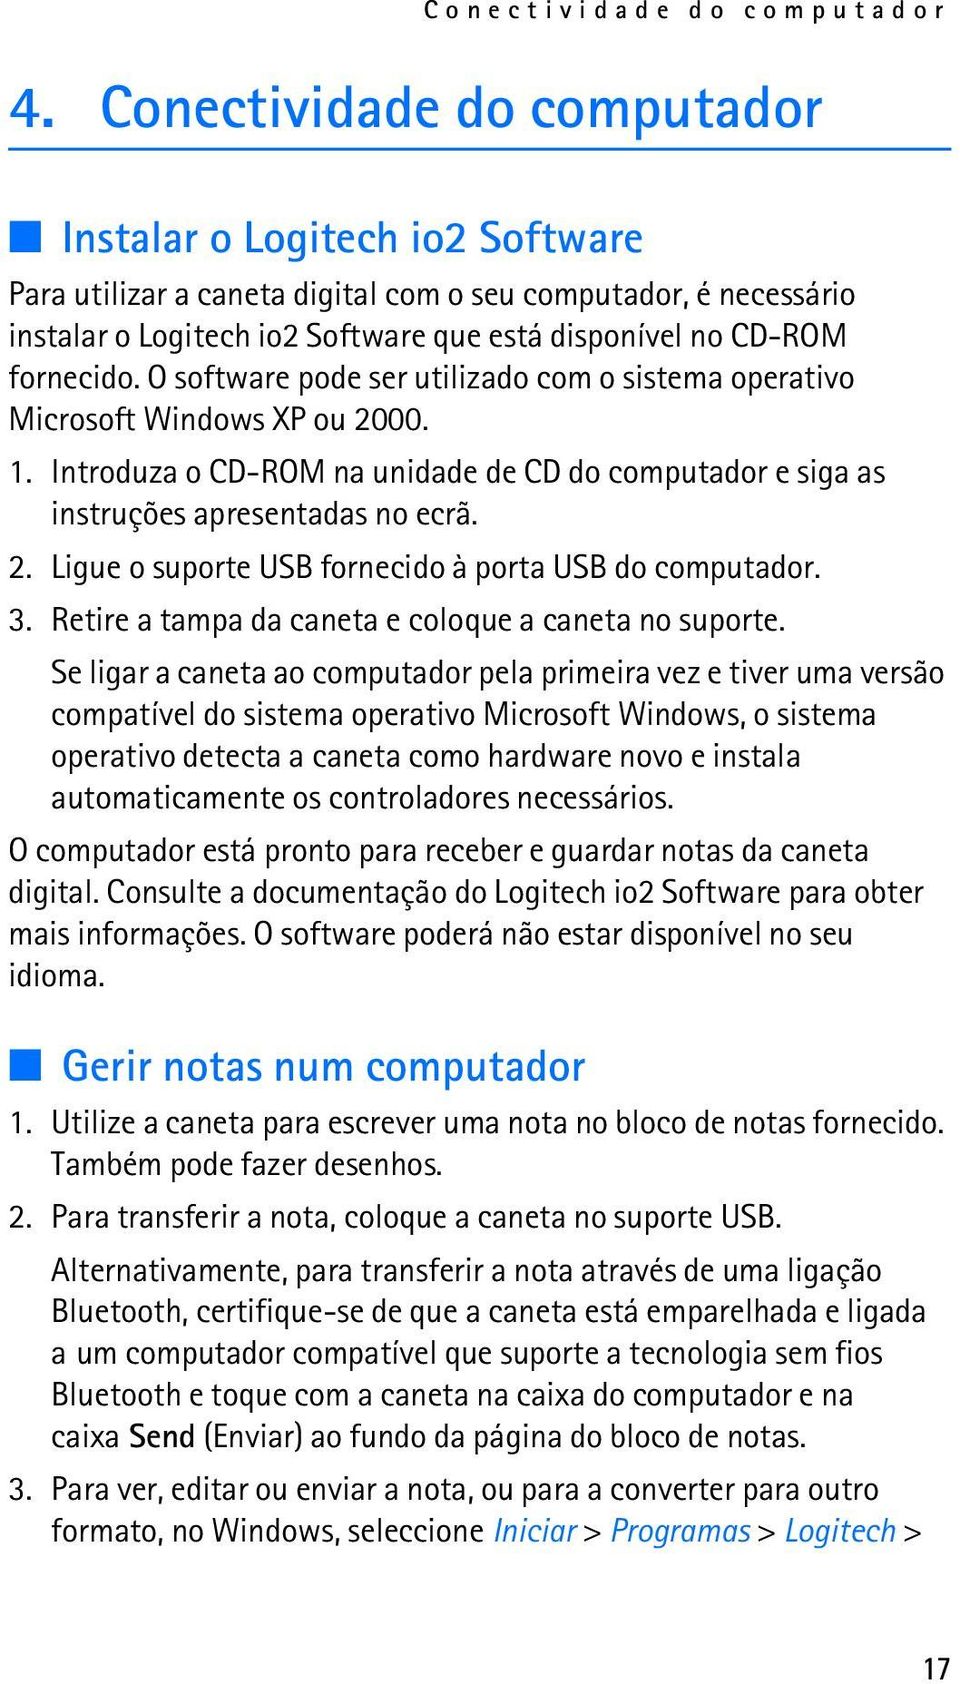 O software pode ser utilizado com o sistema operativo Microsoft Windows XP ou 2000. 1. Introduza o CD-ROM na unidade de CD do computador e siga as instruções apresentadas no ecrã. 2. Ligue o suporte USB fornecido à porta USB do computador.